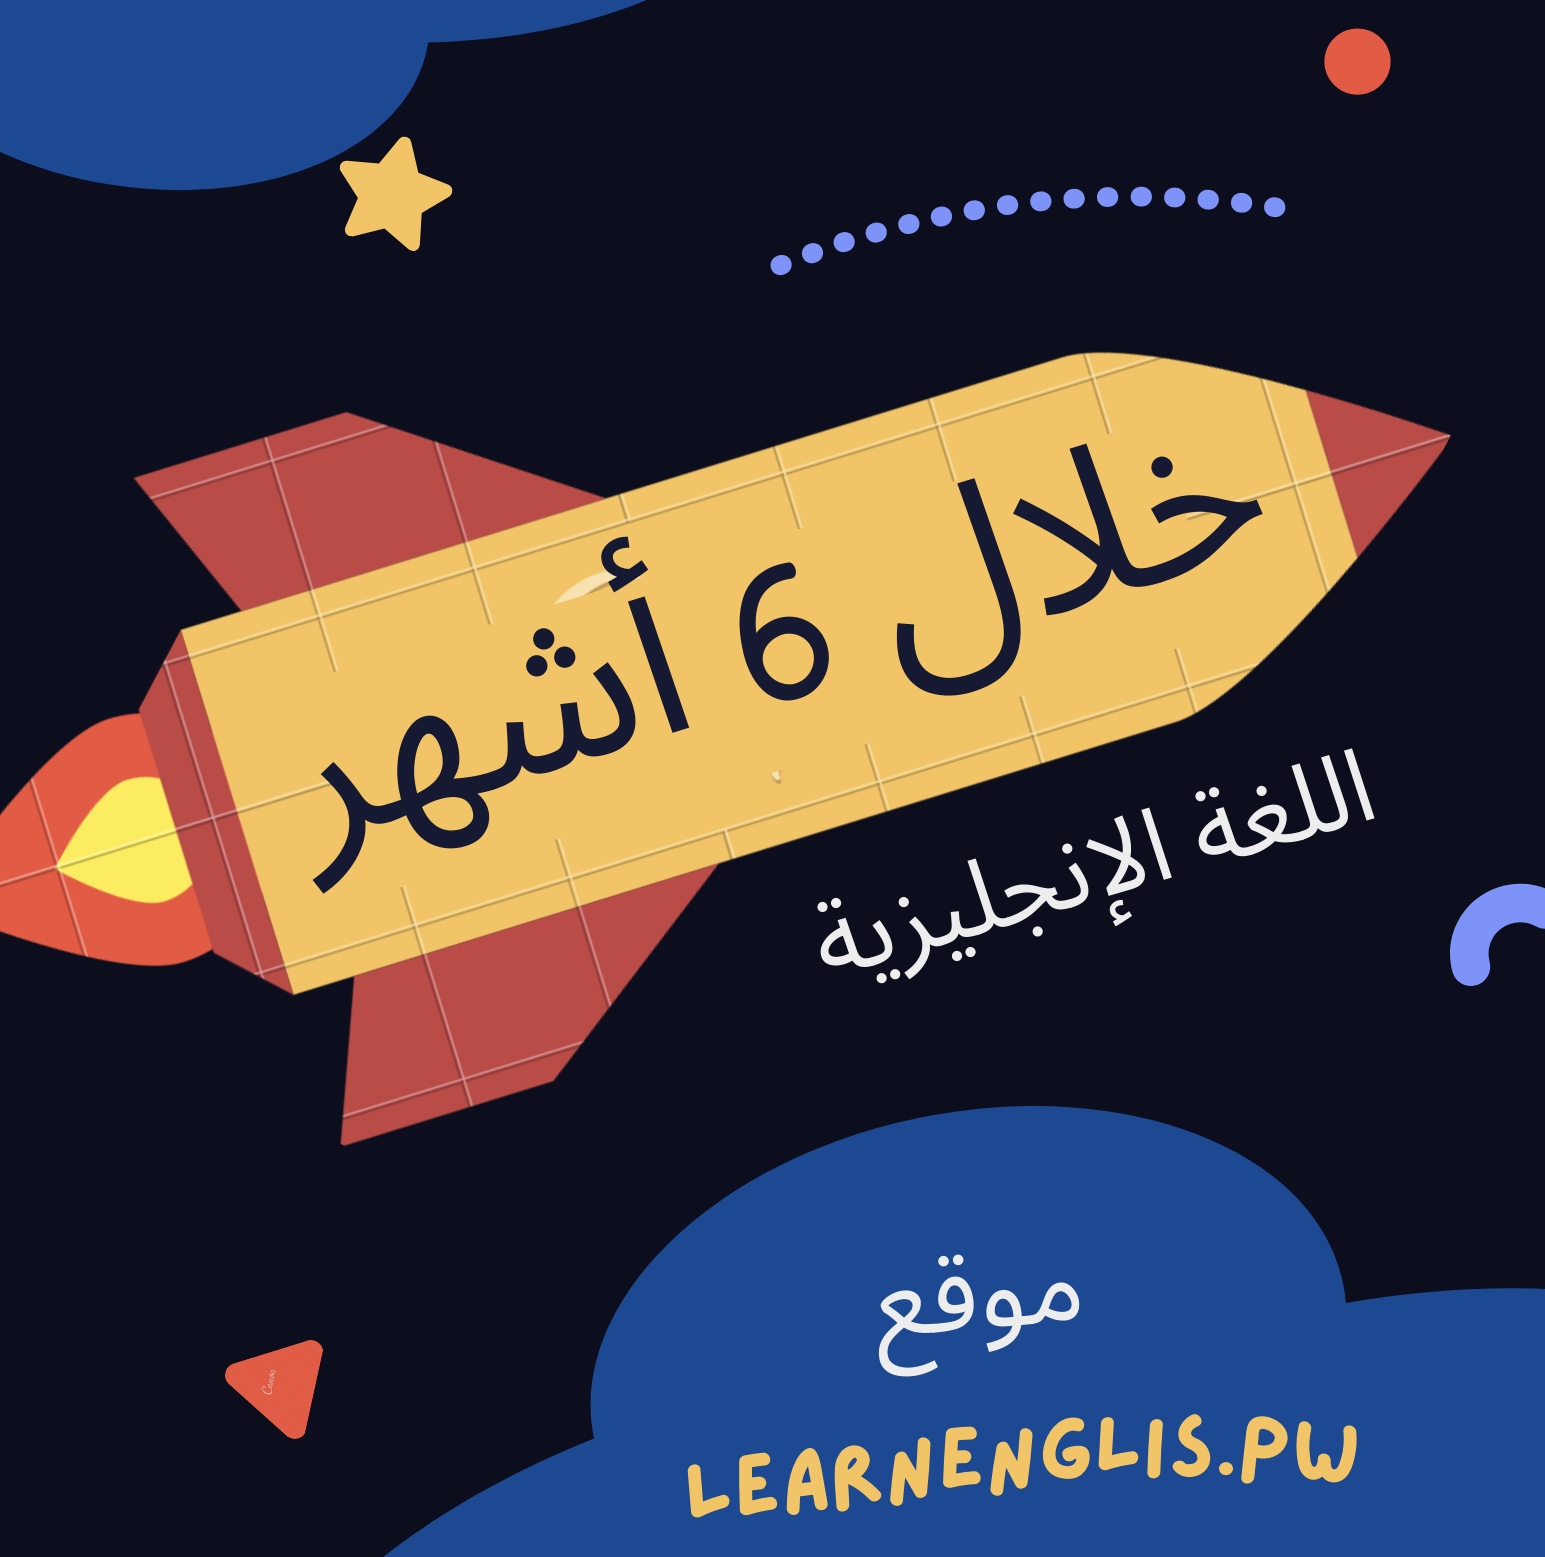 خطة تعلم اللغة الإنجليزية خلال 6 أشهر Learnenglishpw 